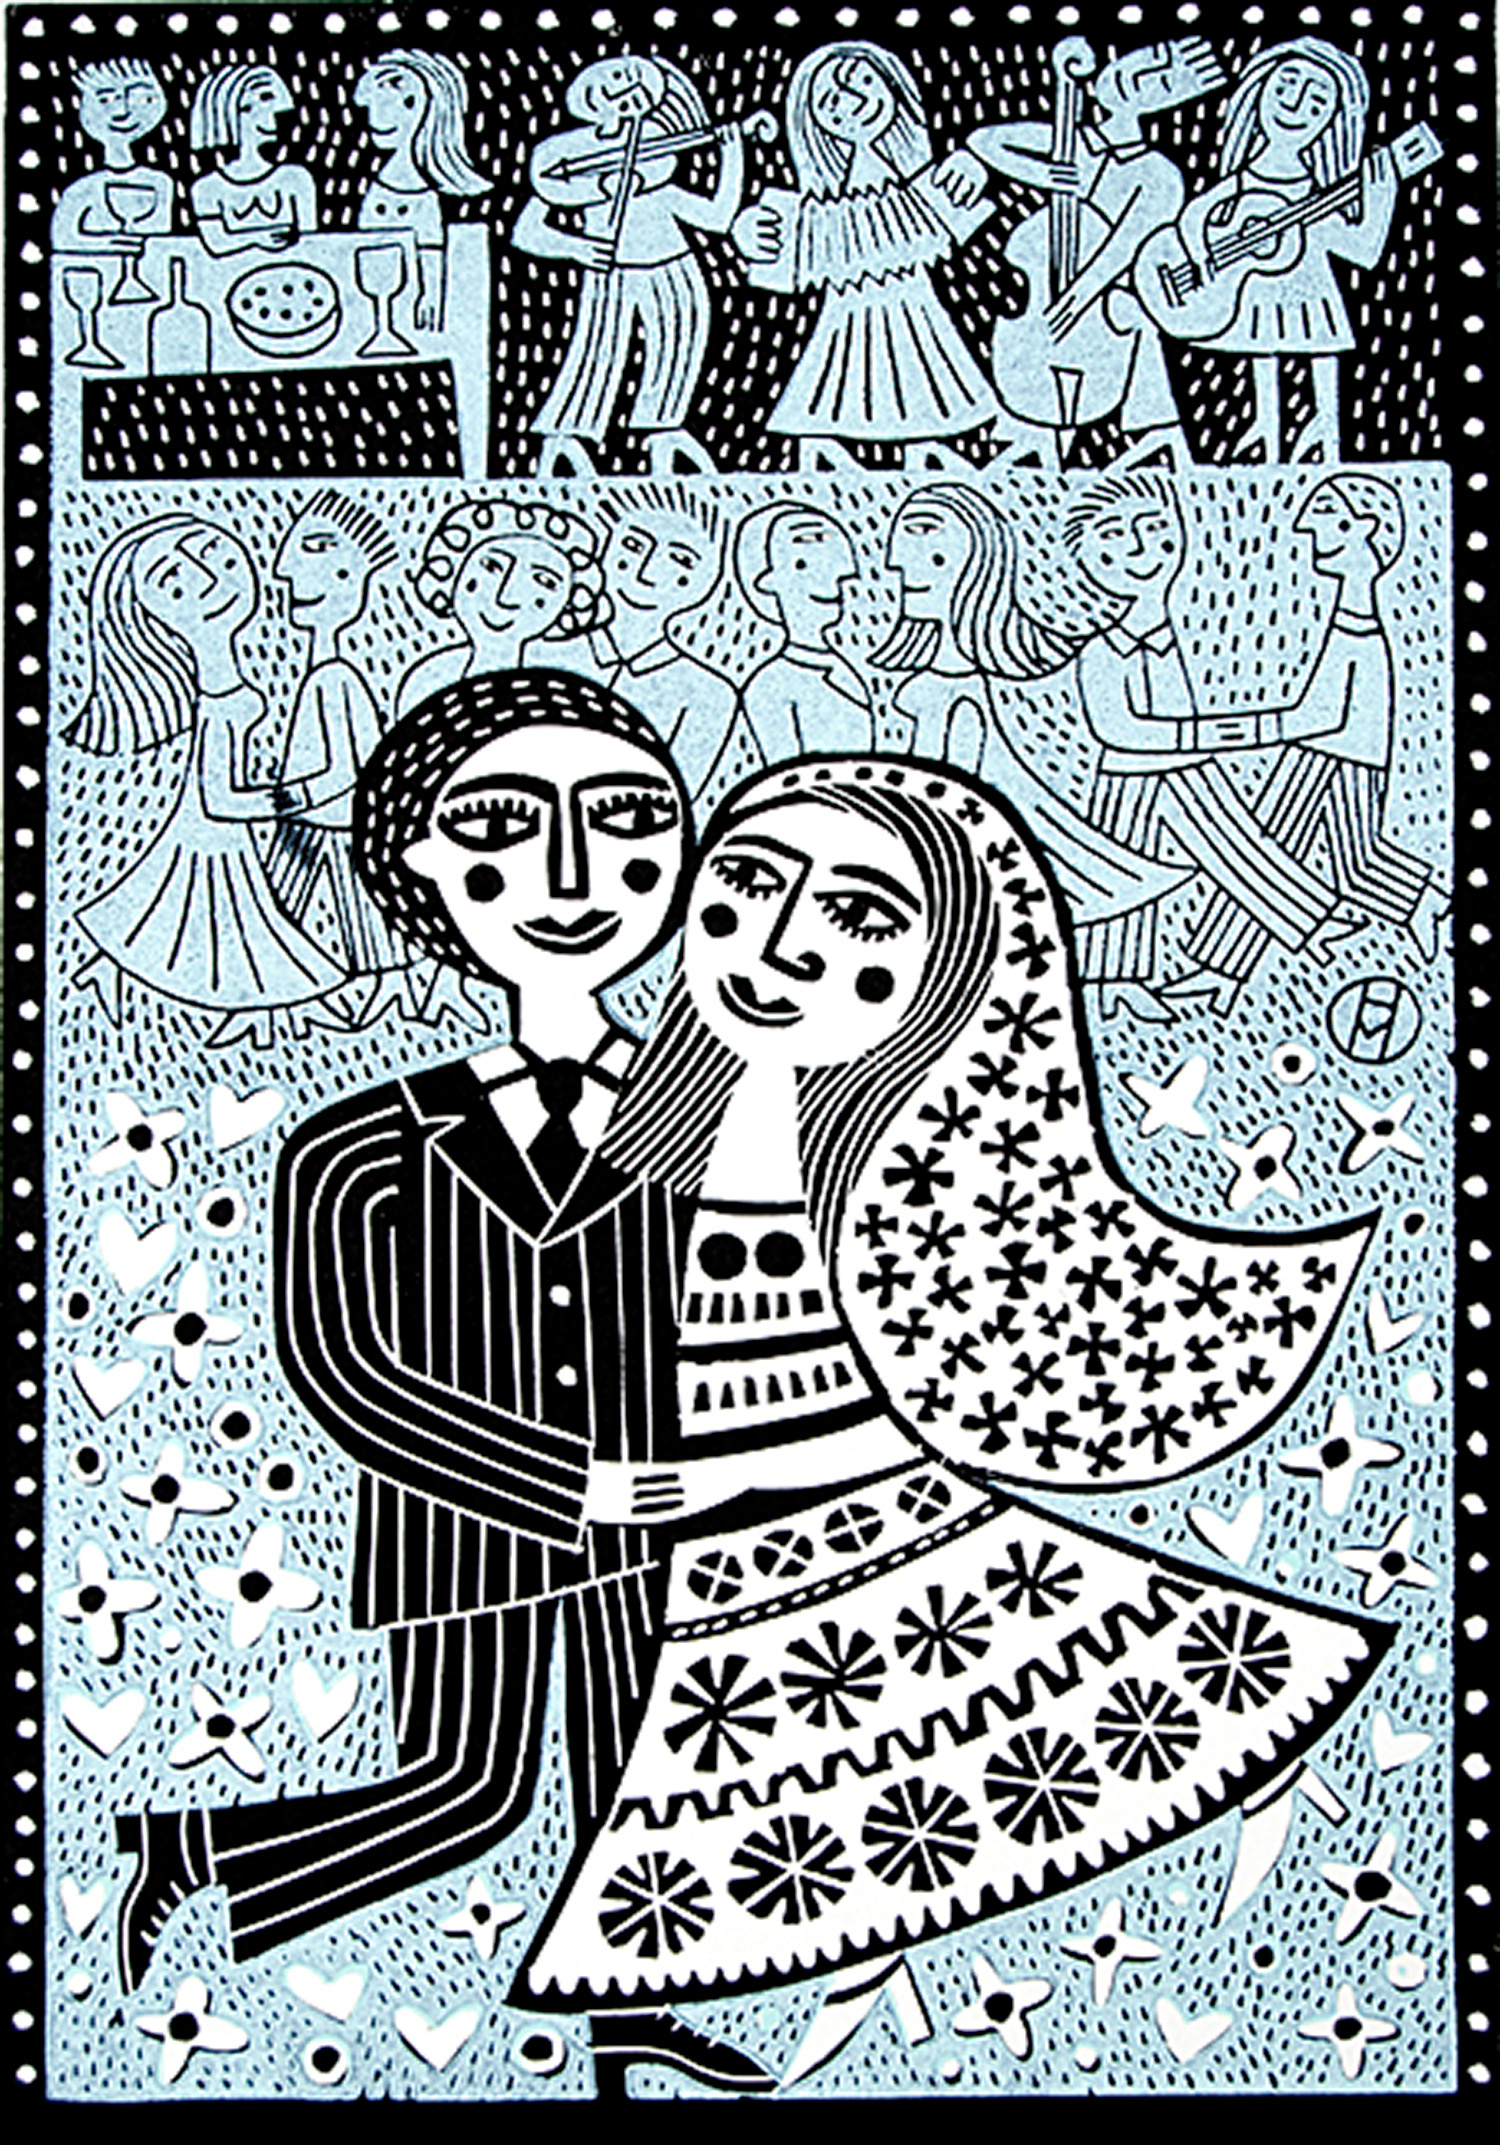 Dancing at the Wedding by Hilke MacIntyre